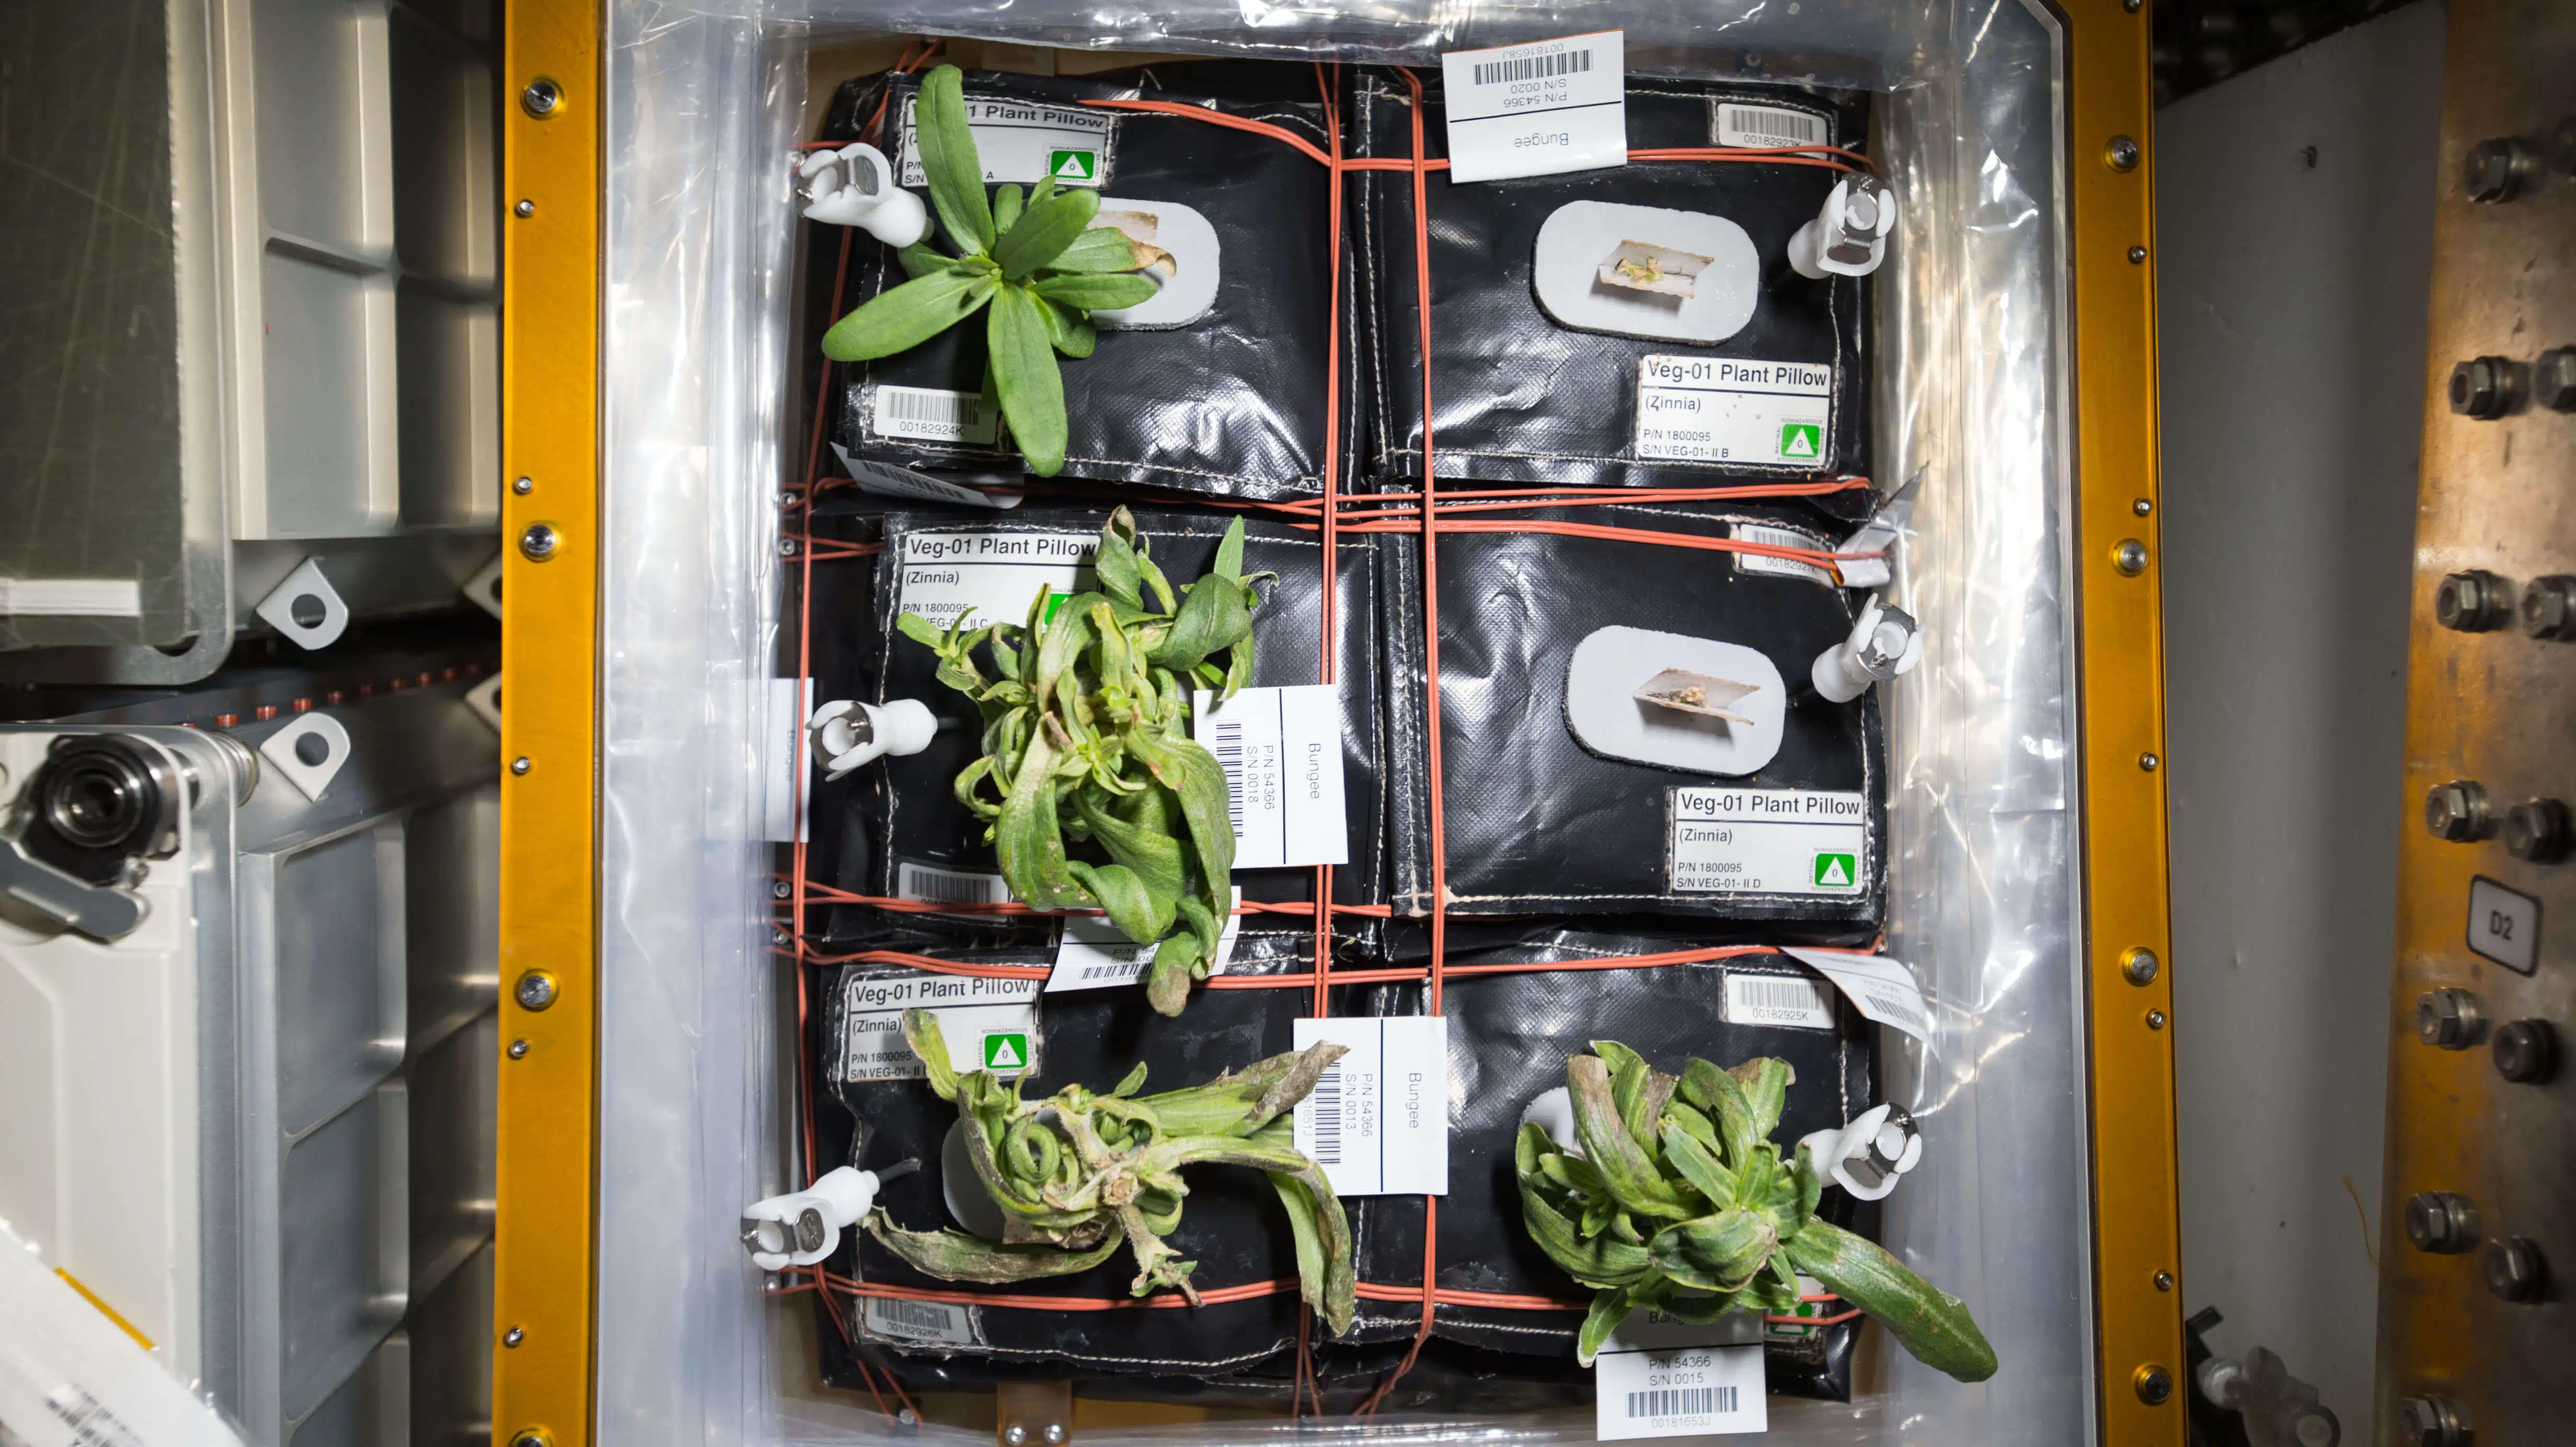 צמחי הזיניה שגדלים על גבי מערכת הניסוי "וגי" (Veggie) בתחנת החלל הבינלאומית. מקור: נאס"א.